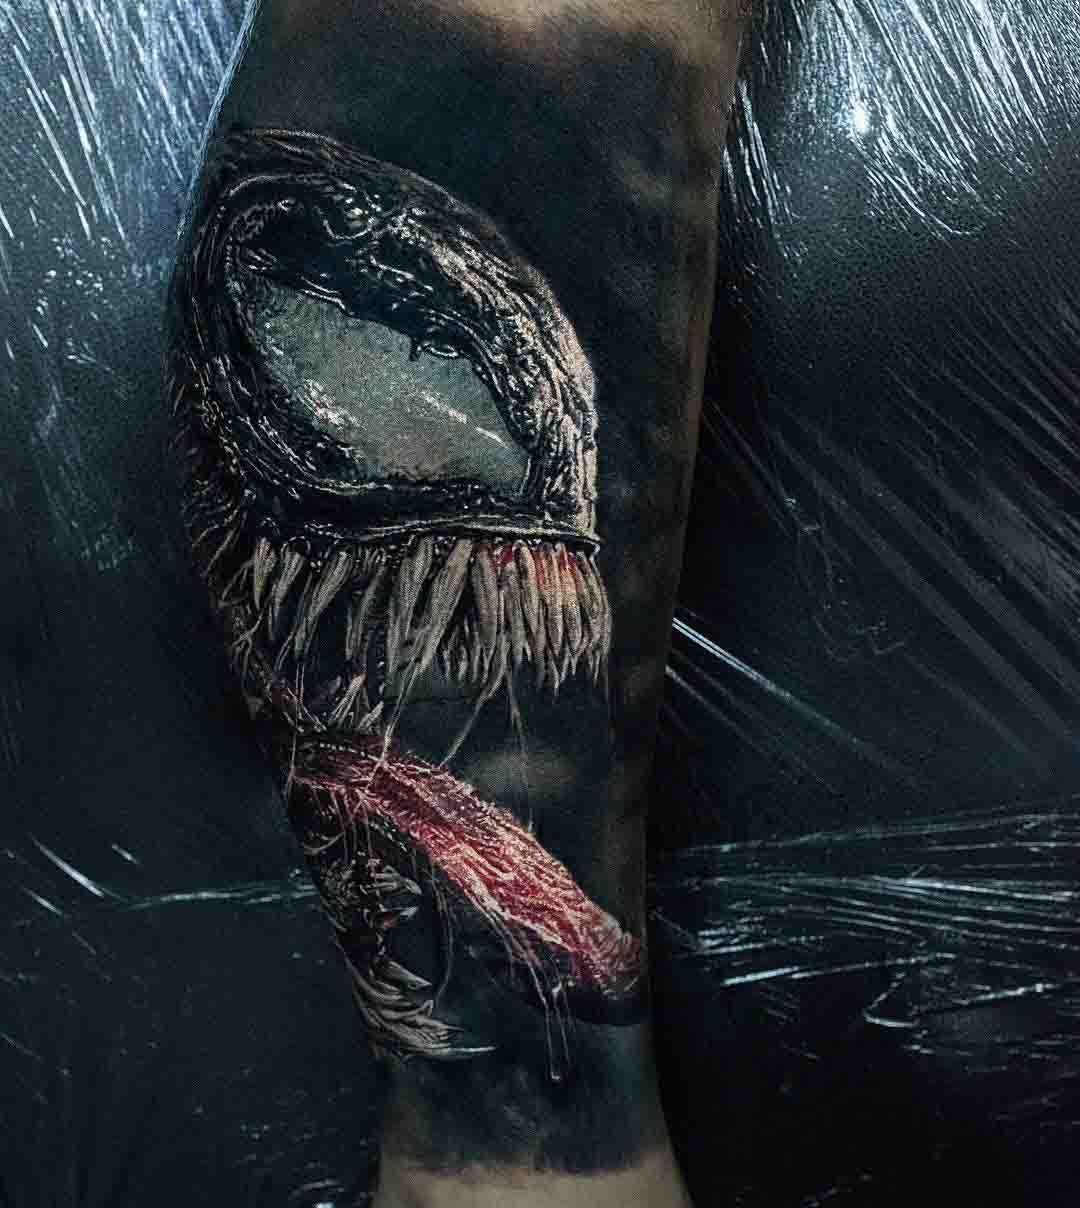 Venom Tattoo - Best Tattoo Ideas Gallery